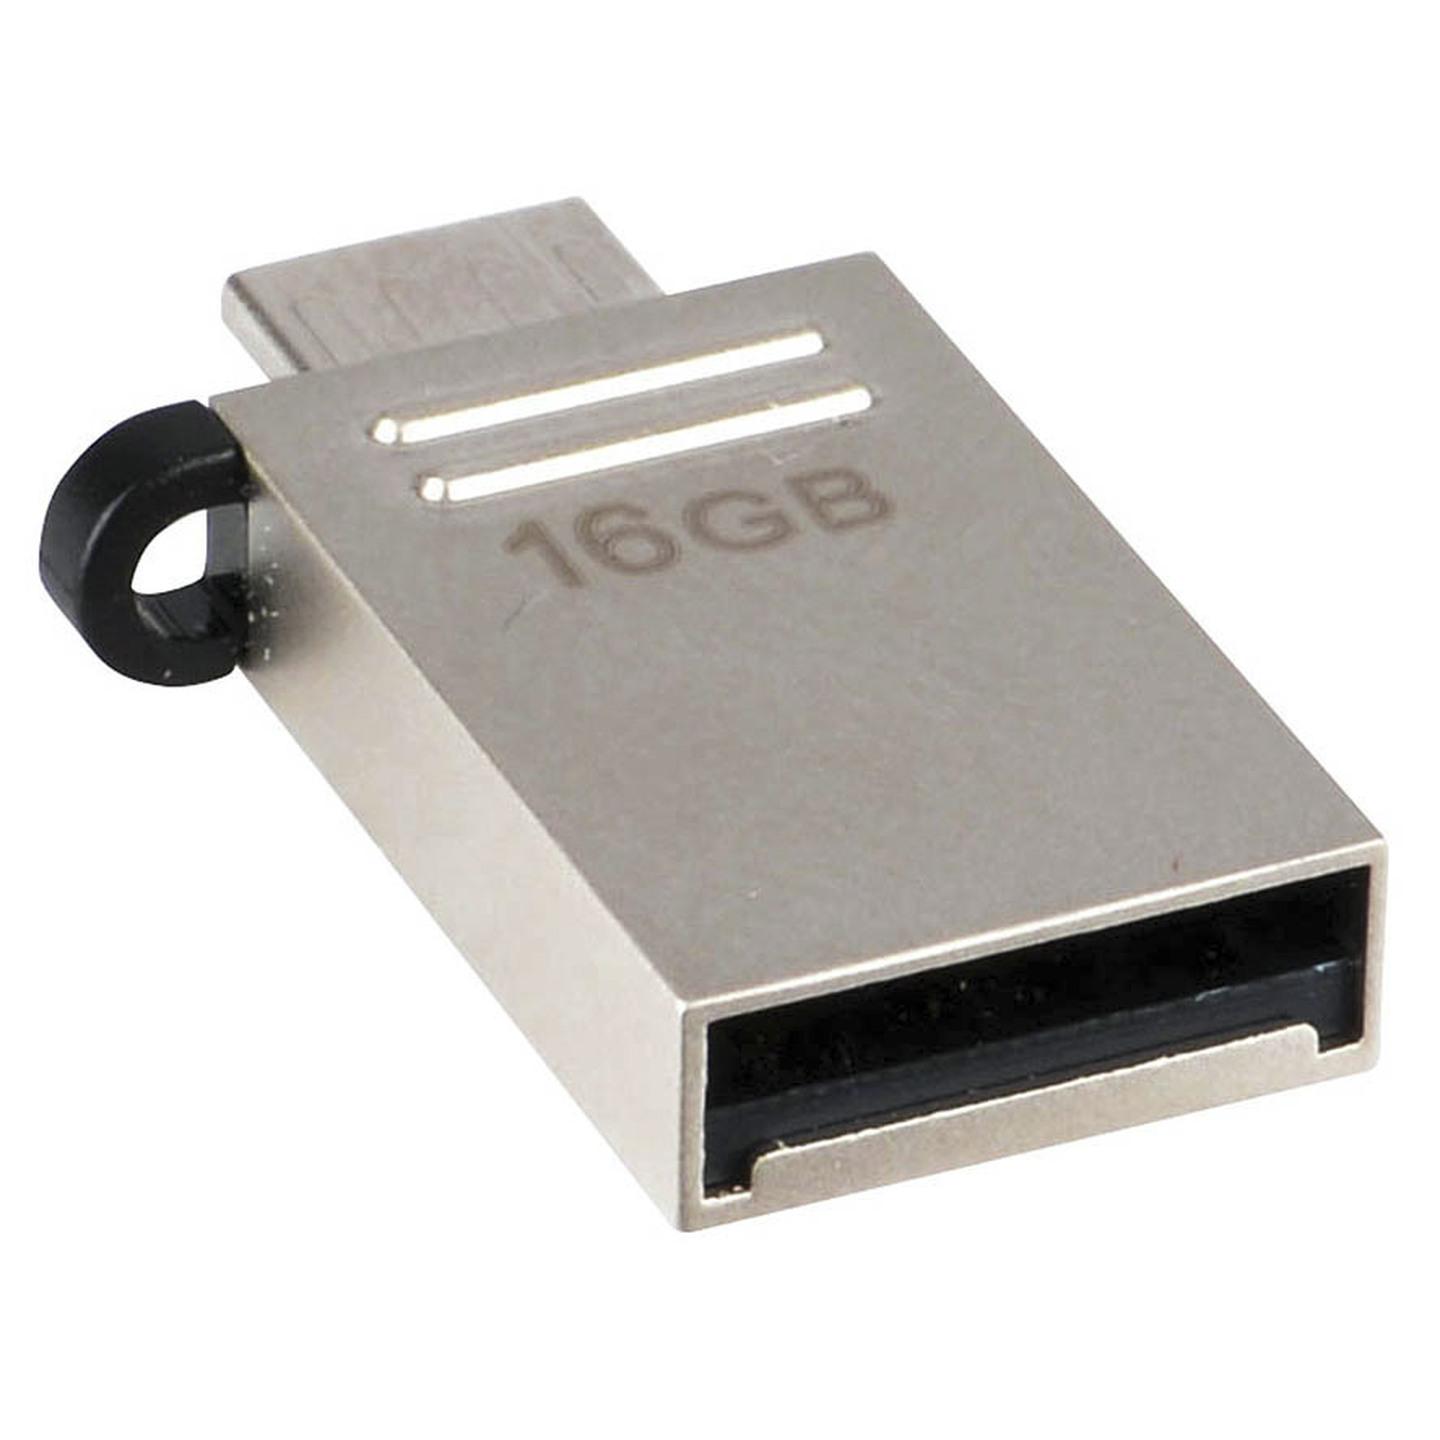 16GB OTG USB Flash Drive